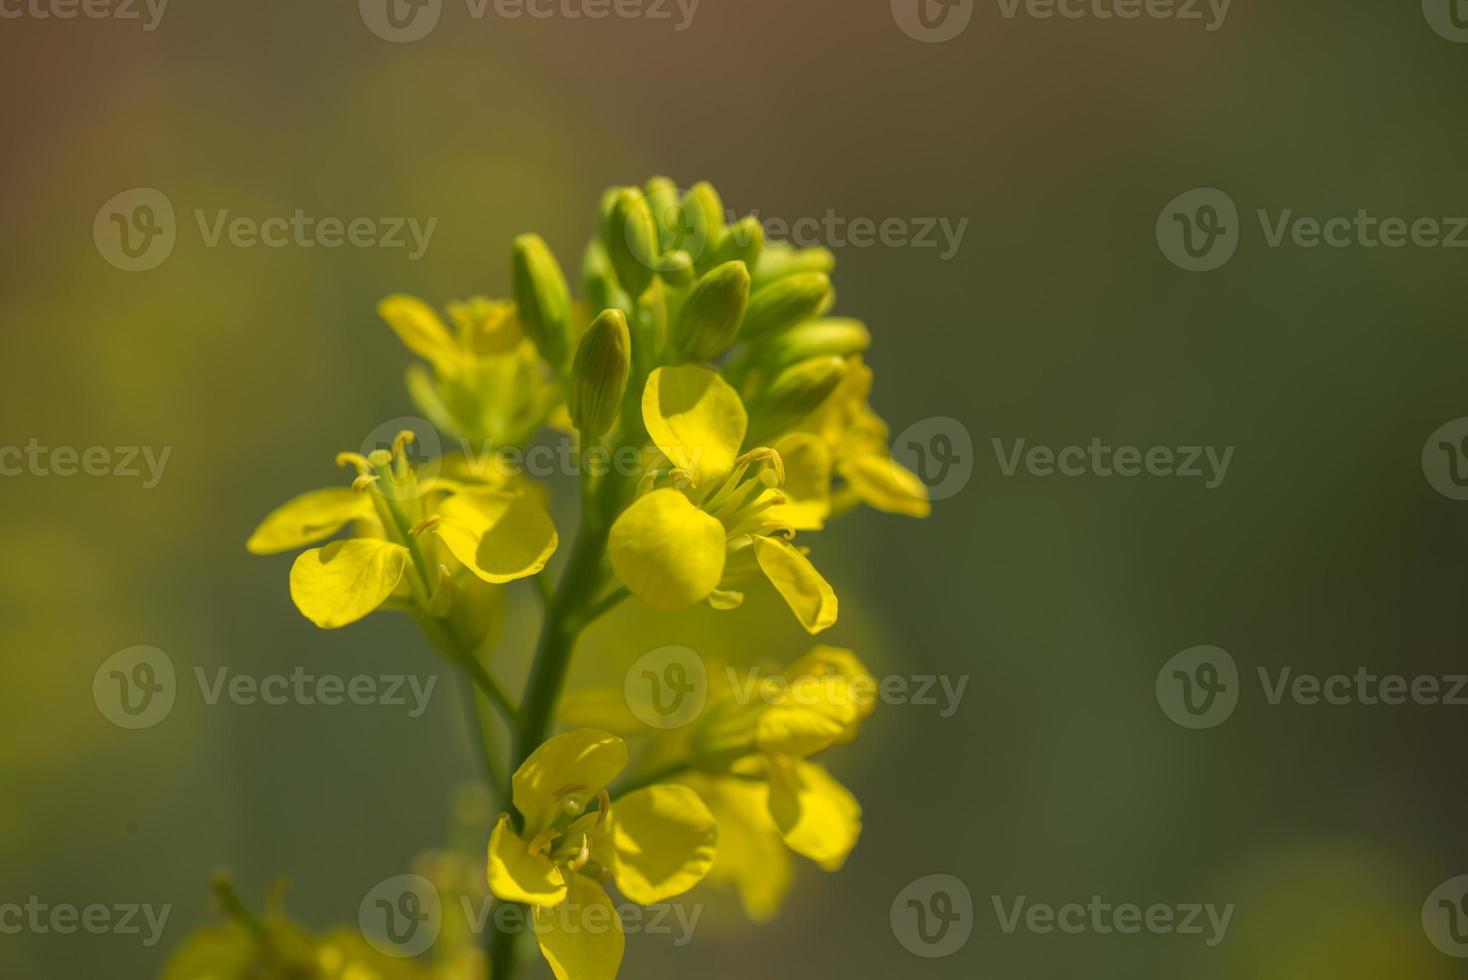 senapsblommor som blommar på växten på gårdsfältet med skida. närbild. foto